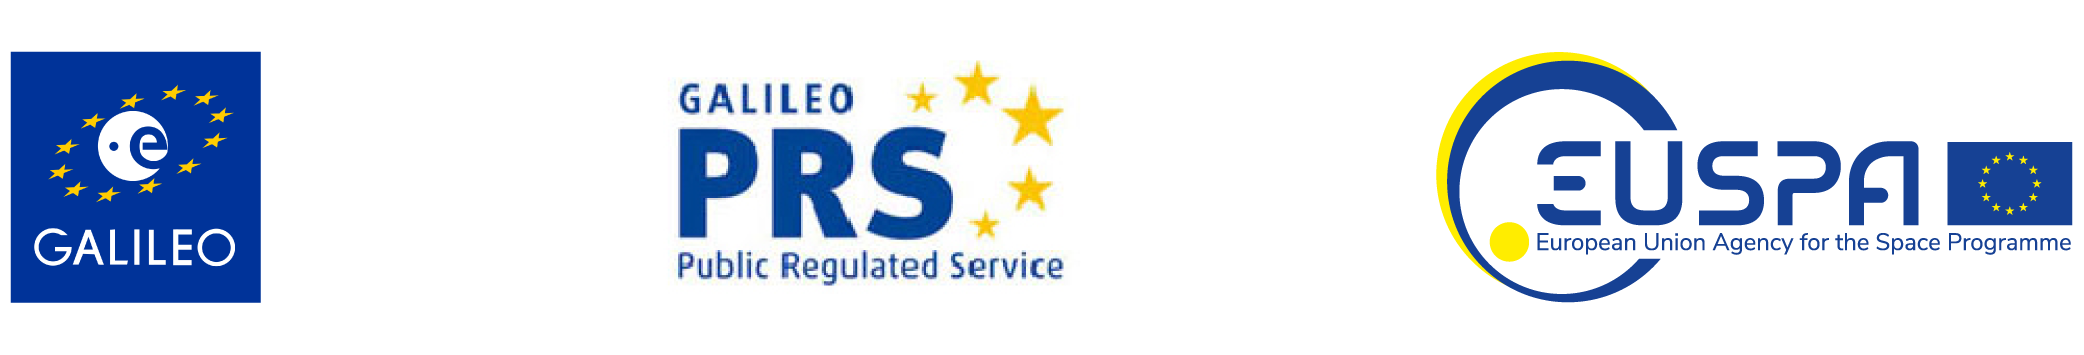 Loga systemu PRS, systemu Galileo i Europejskiej Agencji ds. Globalnych Systemów Nawigacji Satelitarnej